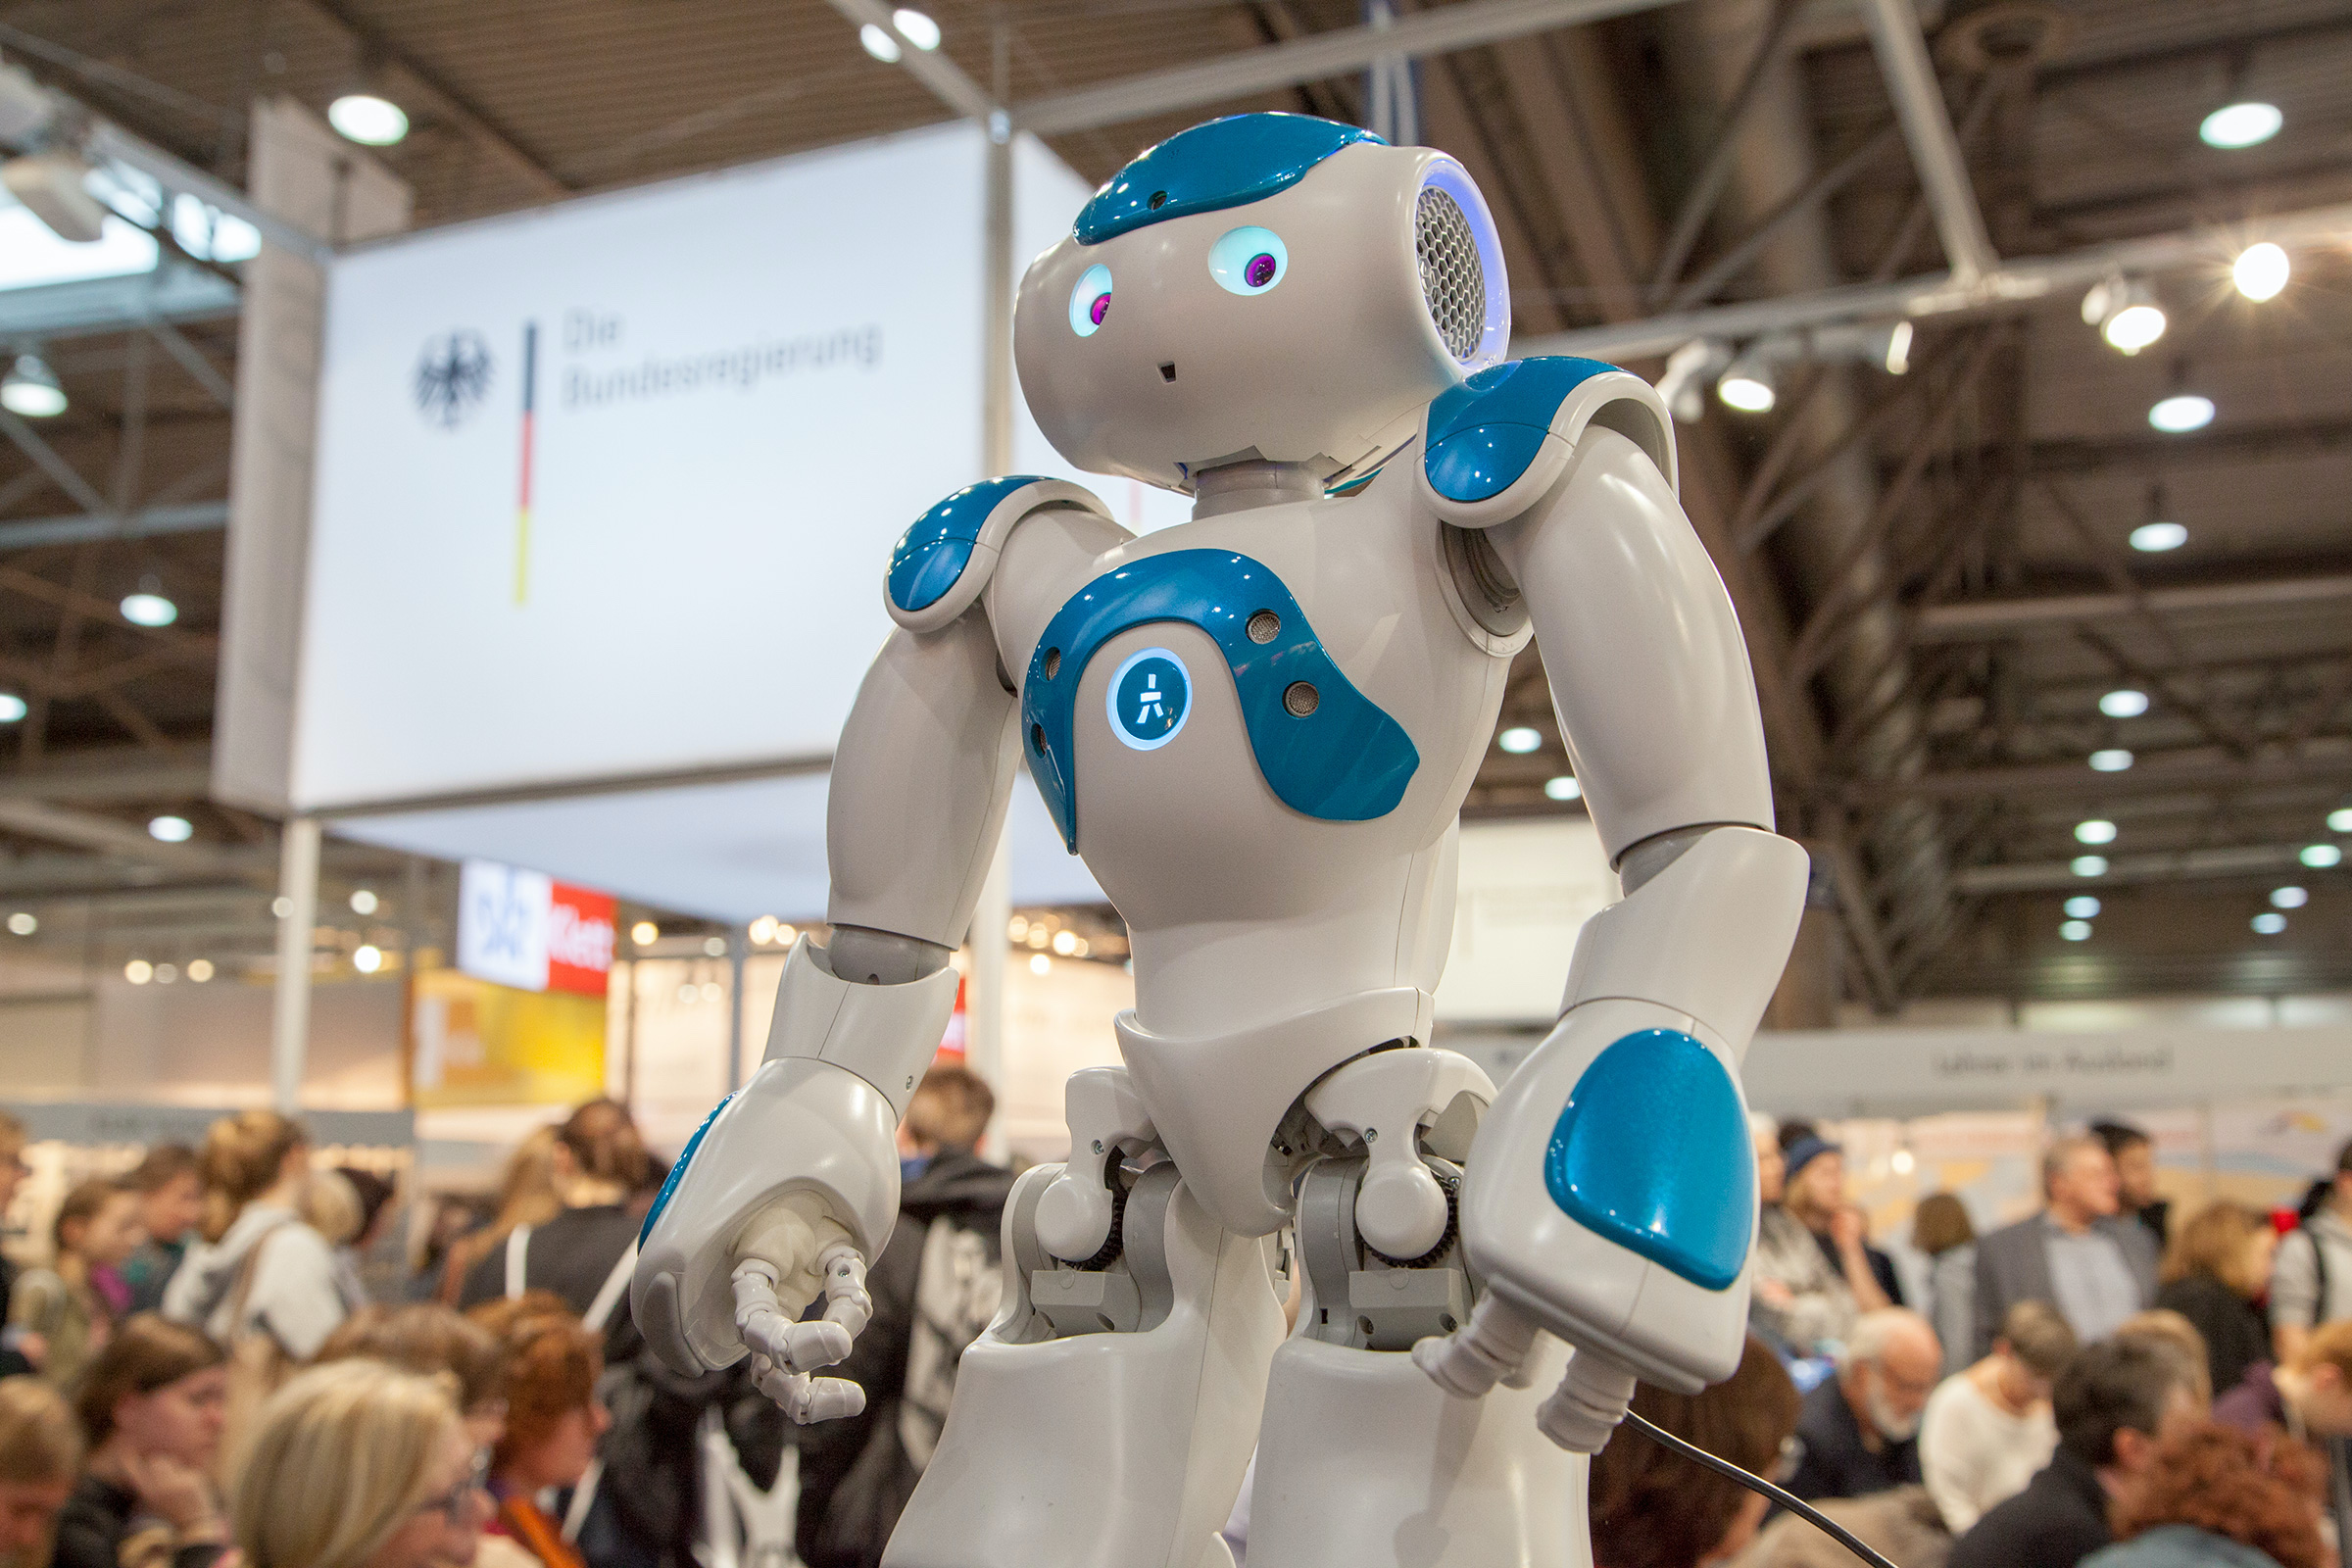 Das RoboticLab auf der Leipziger Buchmesse